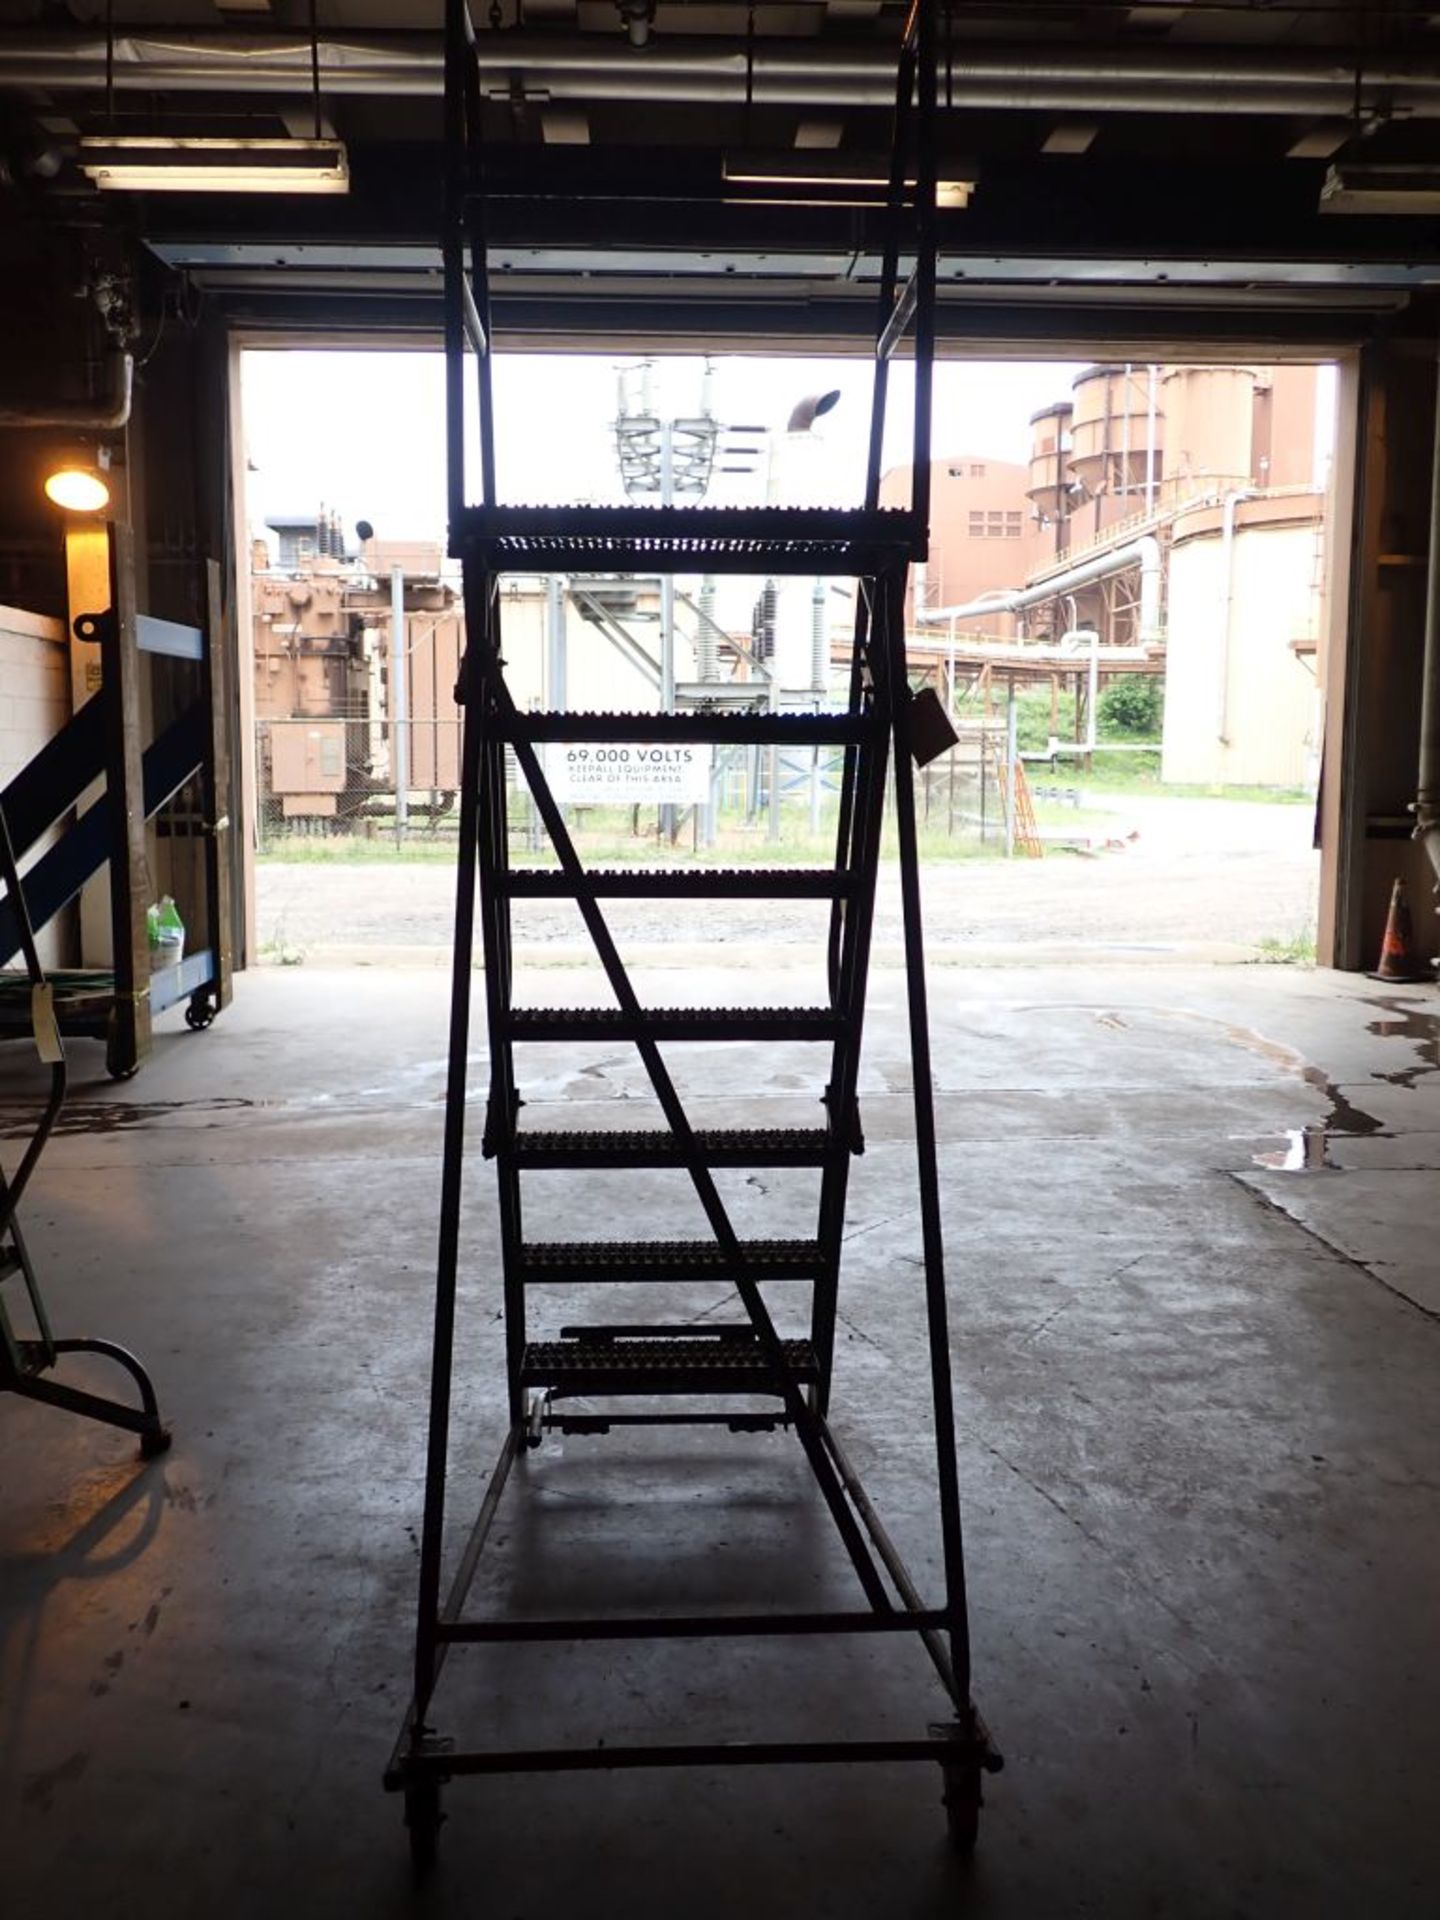 Gills 7' Safety Ladder - Image 3 of 6